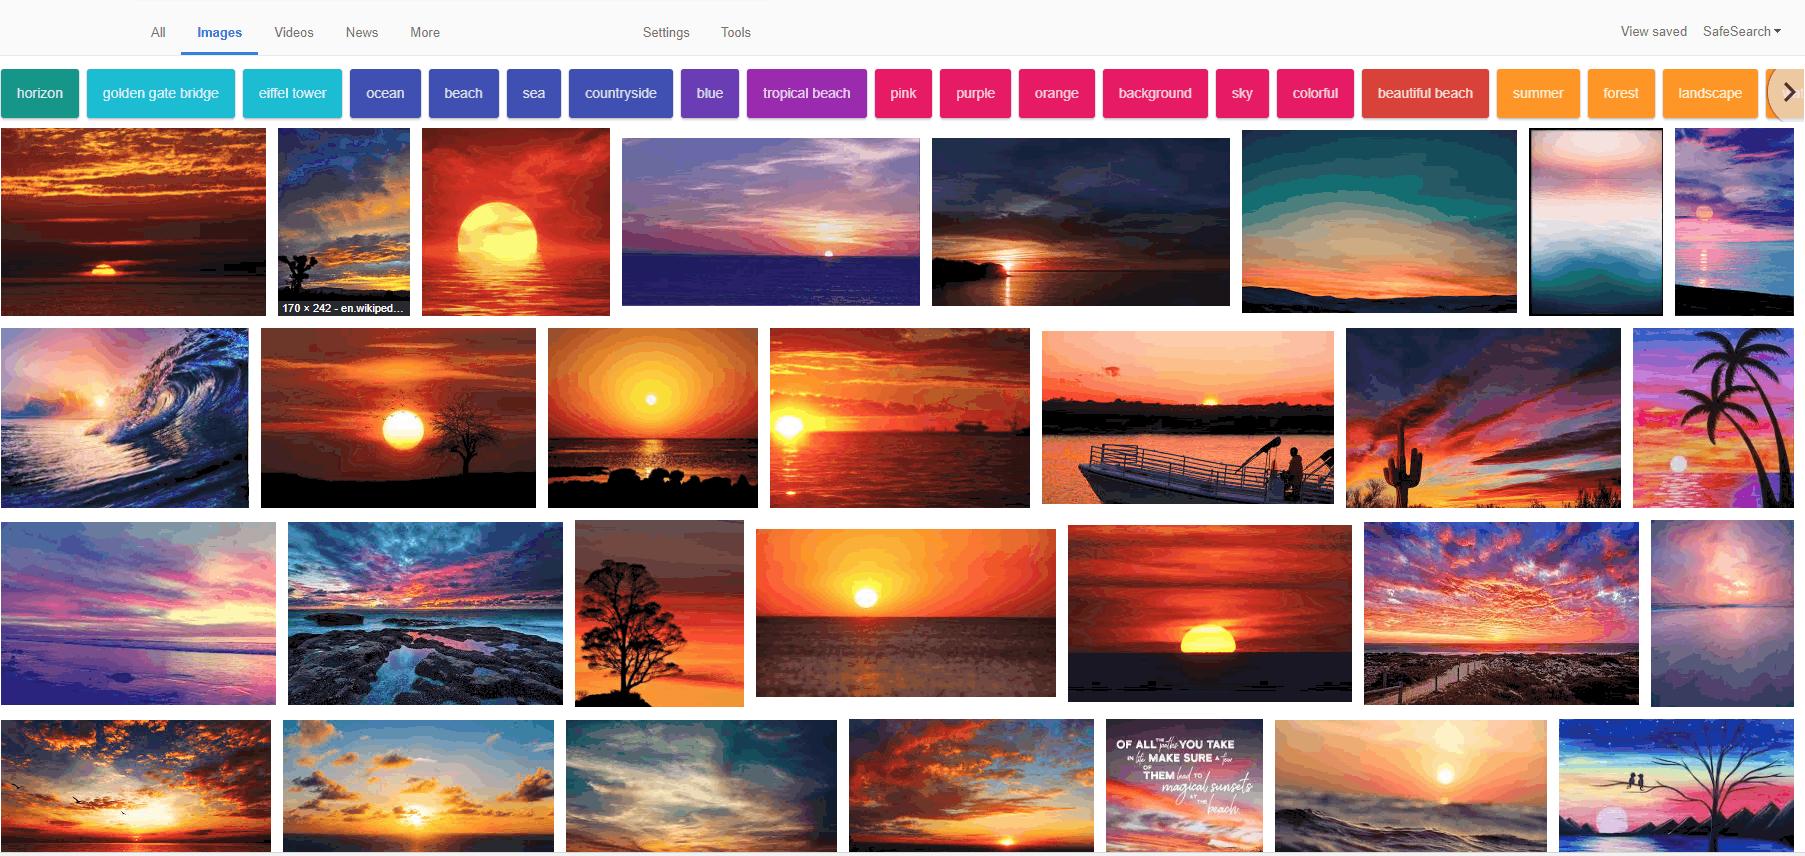 học từ vựng tiếng Anh qua hình ảnh - Tìm kiếm hình ảnh cho từ khóa Sunset trên Google